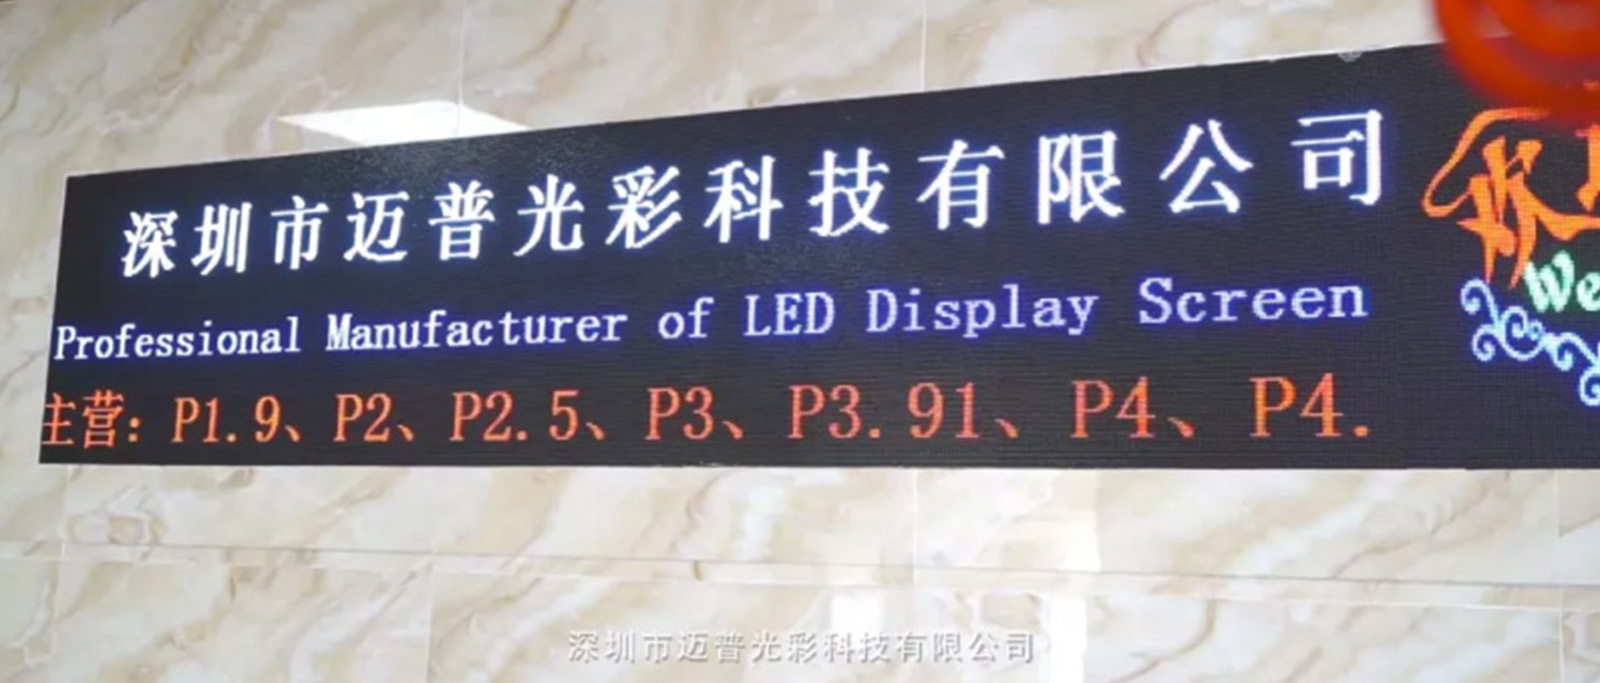 深圳市迈普光彩室内舞台P2.5LED显示屏生产厂家厂家舞台P2.5LED显示屏价格多少钱 迈普光彩室内舞台P2.5LED显示屏生产厂家